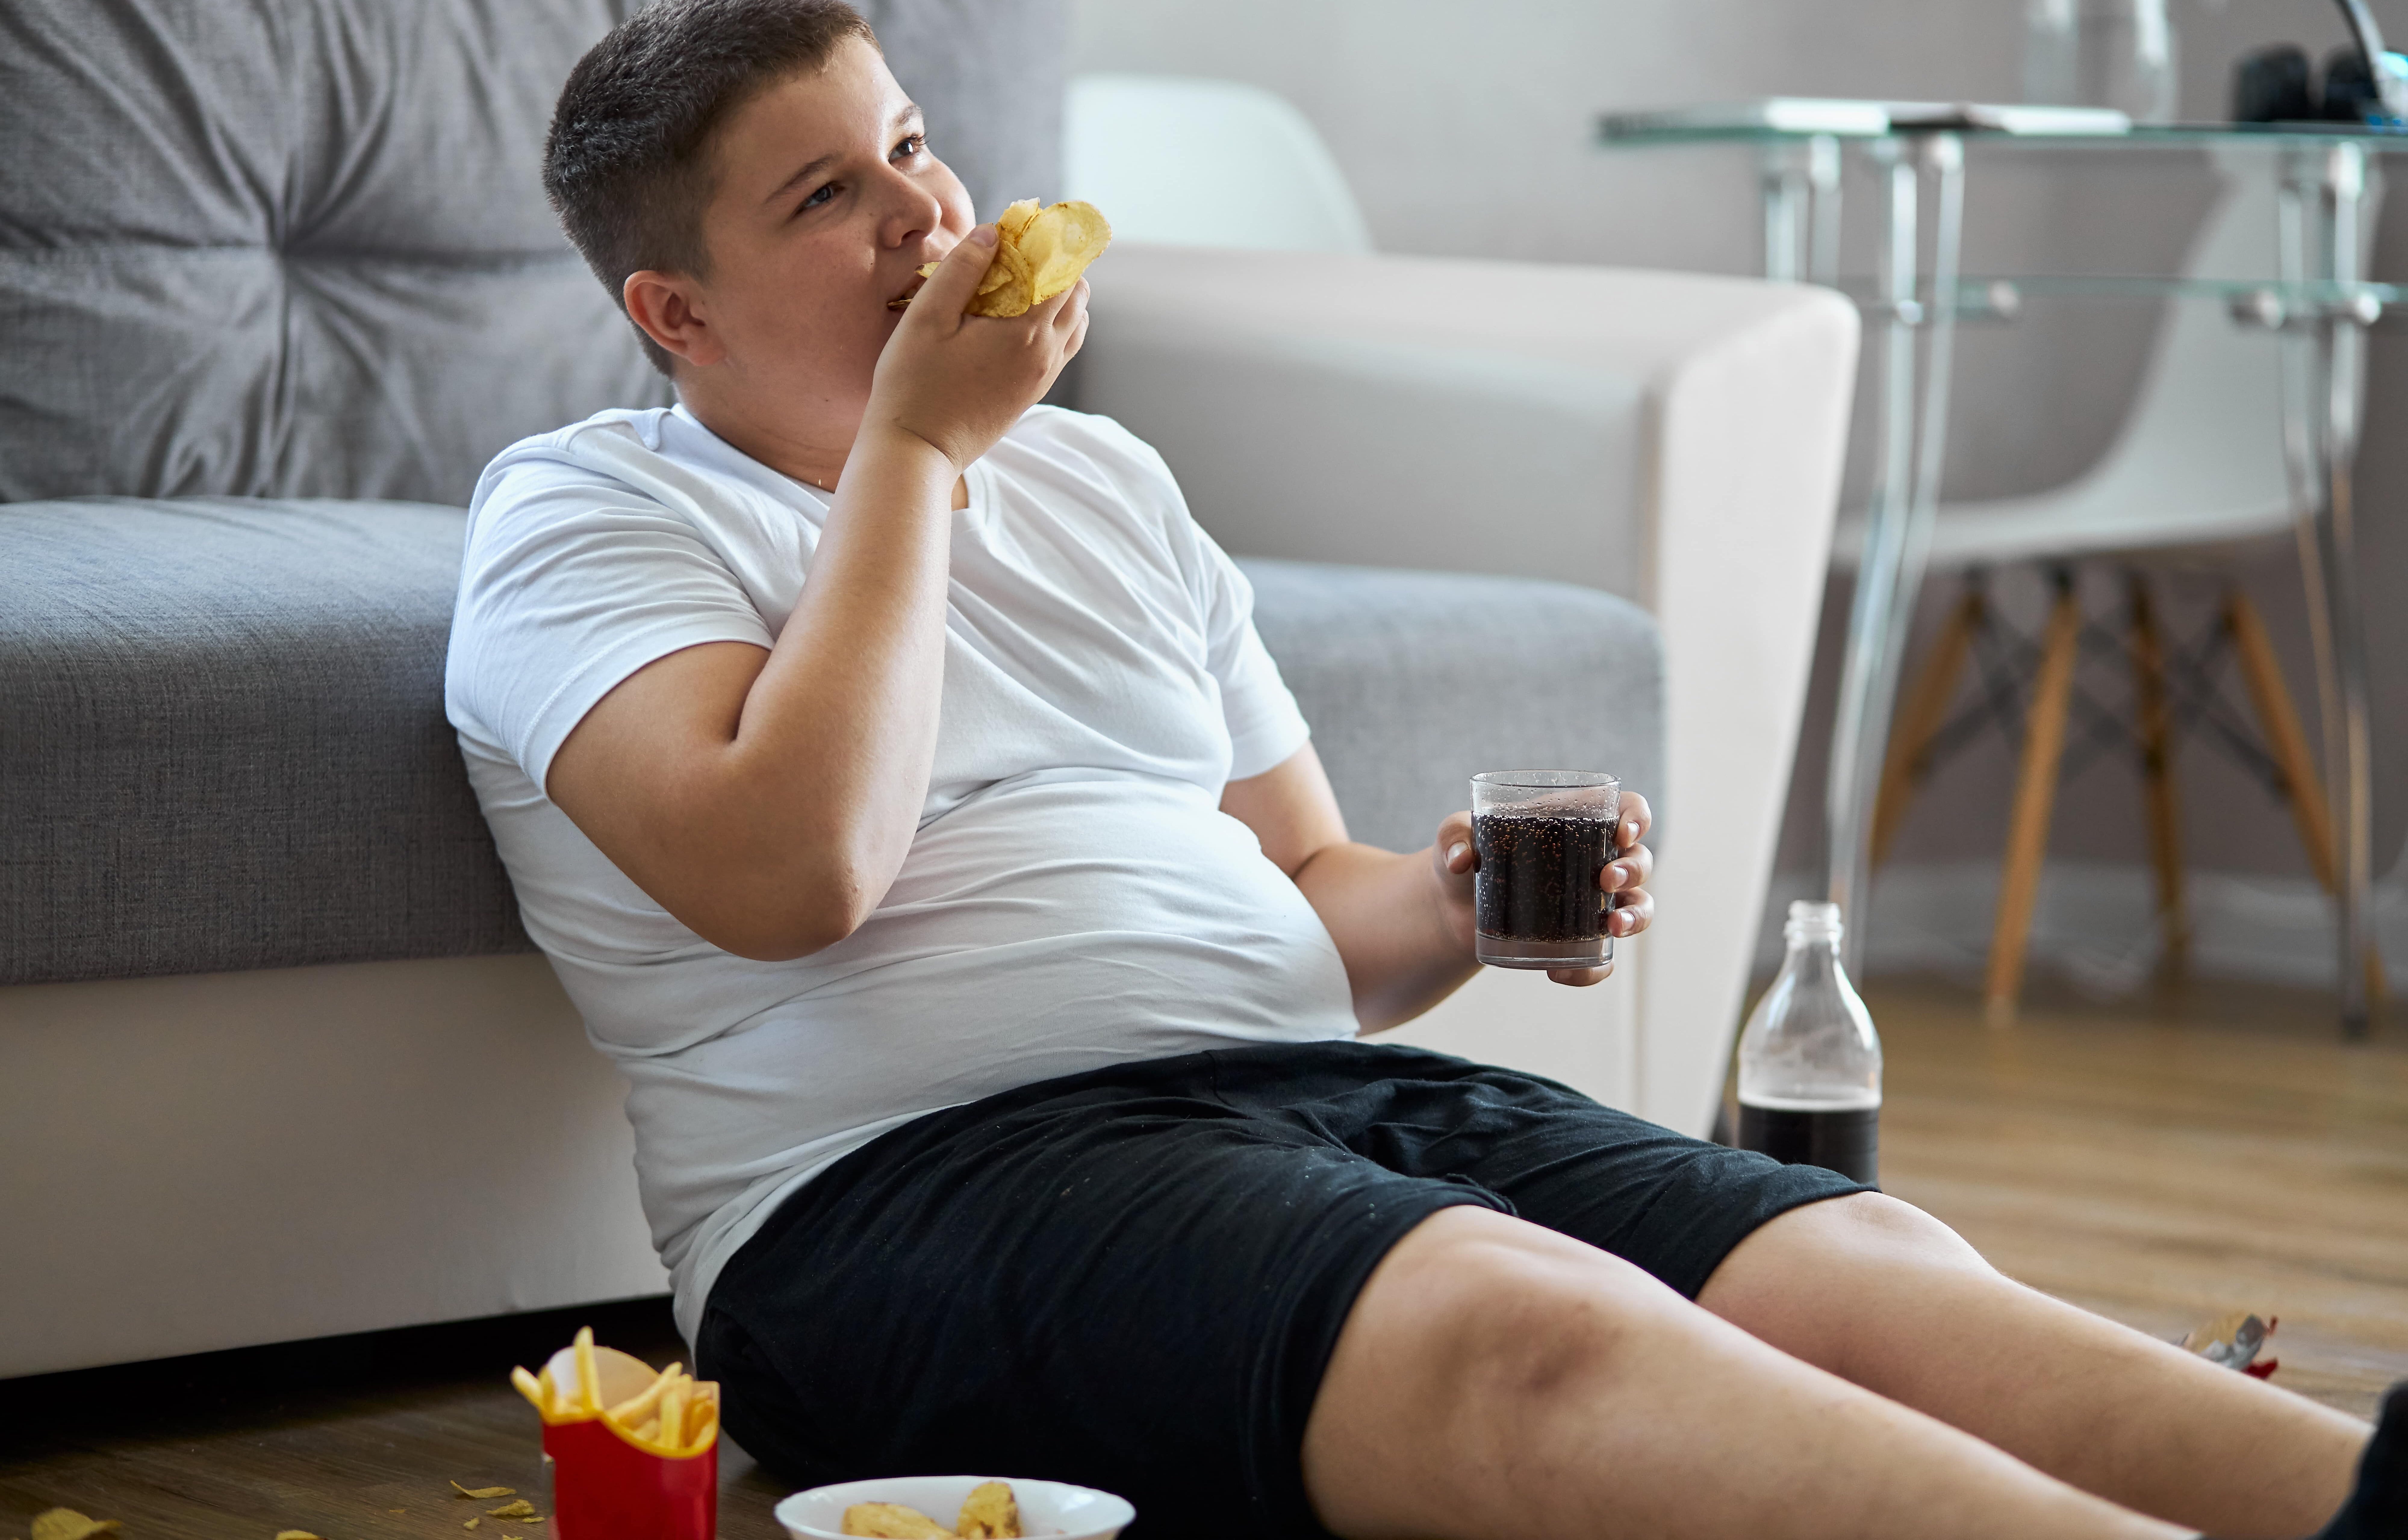 Adolescentes com diabetes tipo 1: 25% estão acima do peso